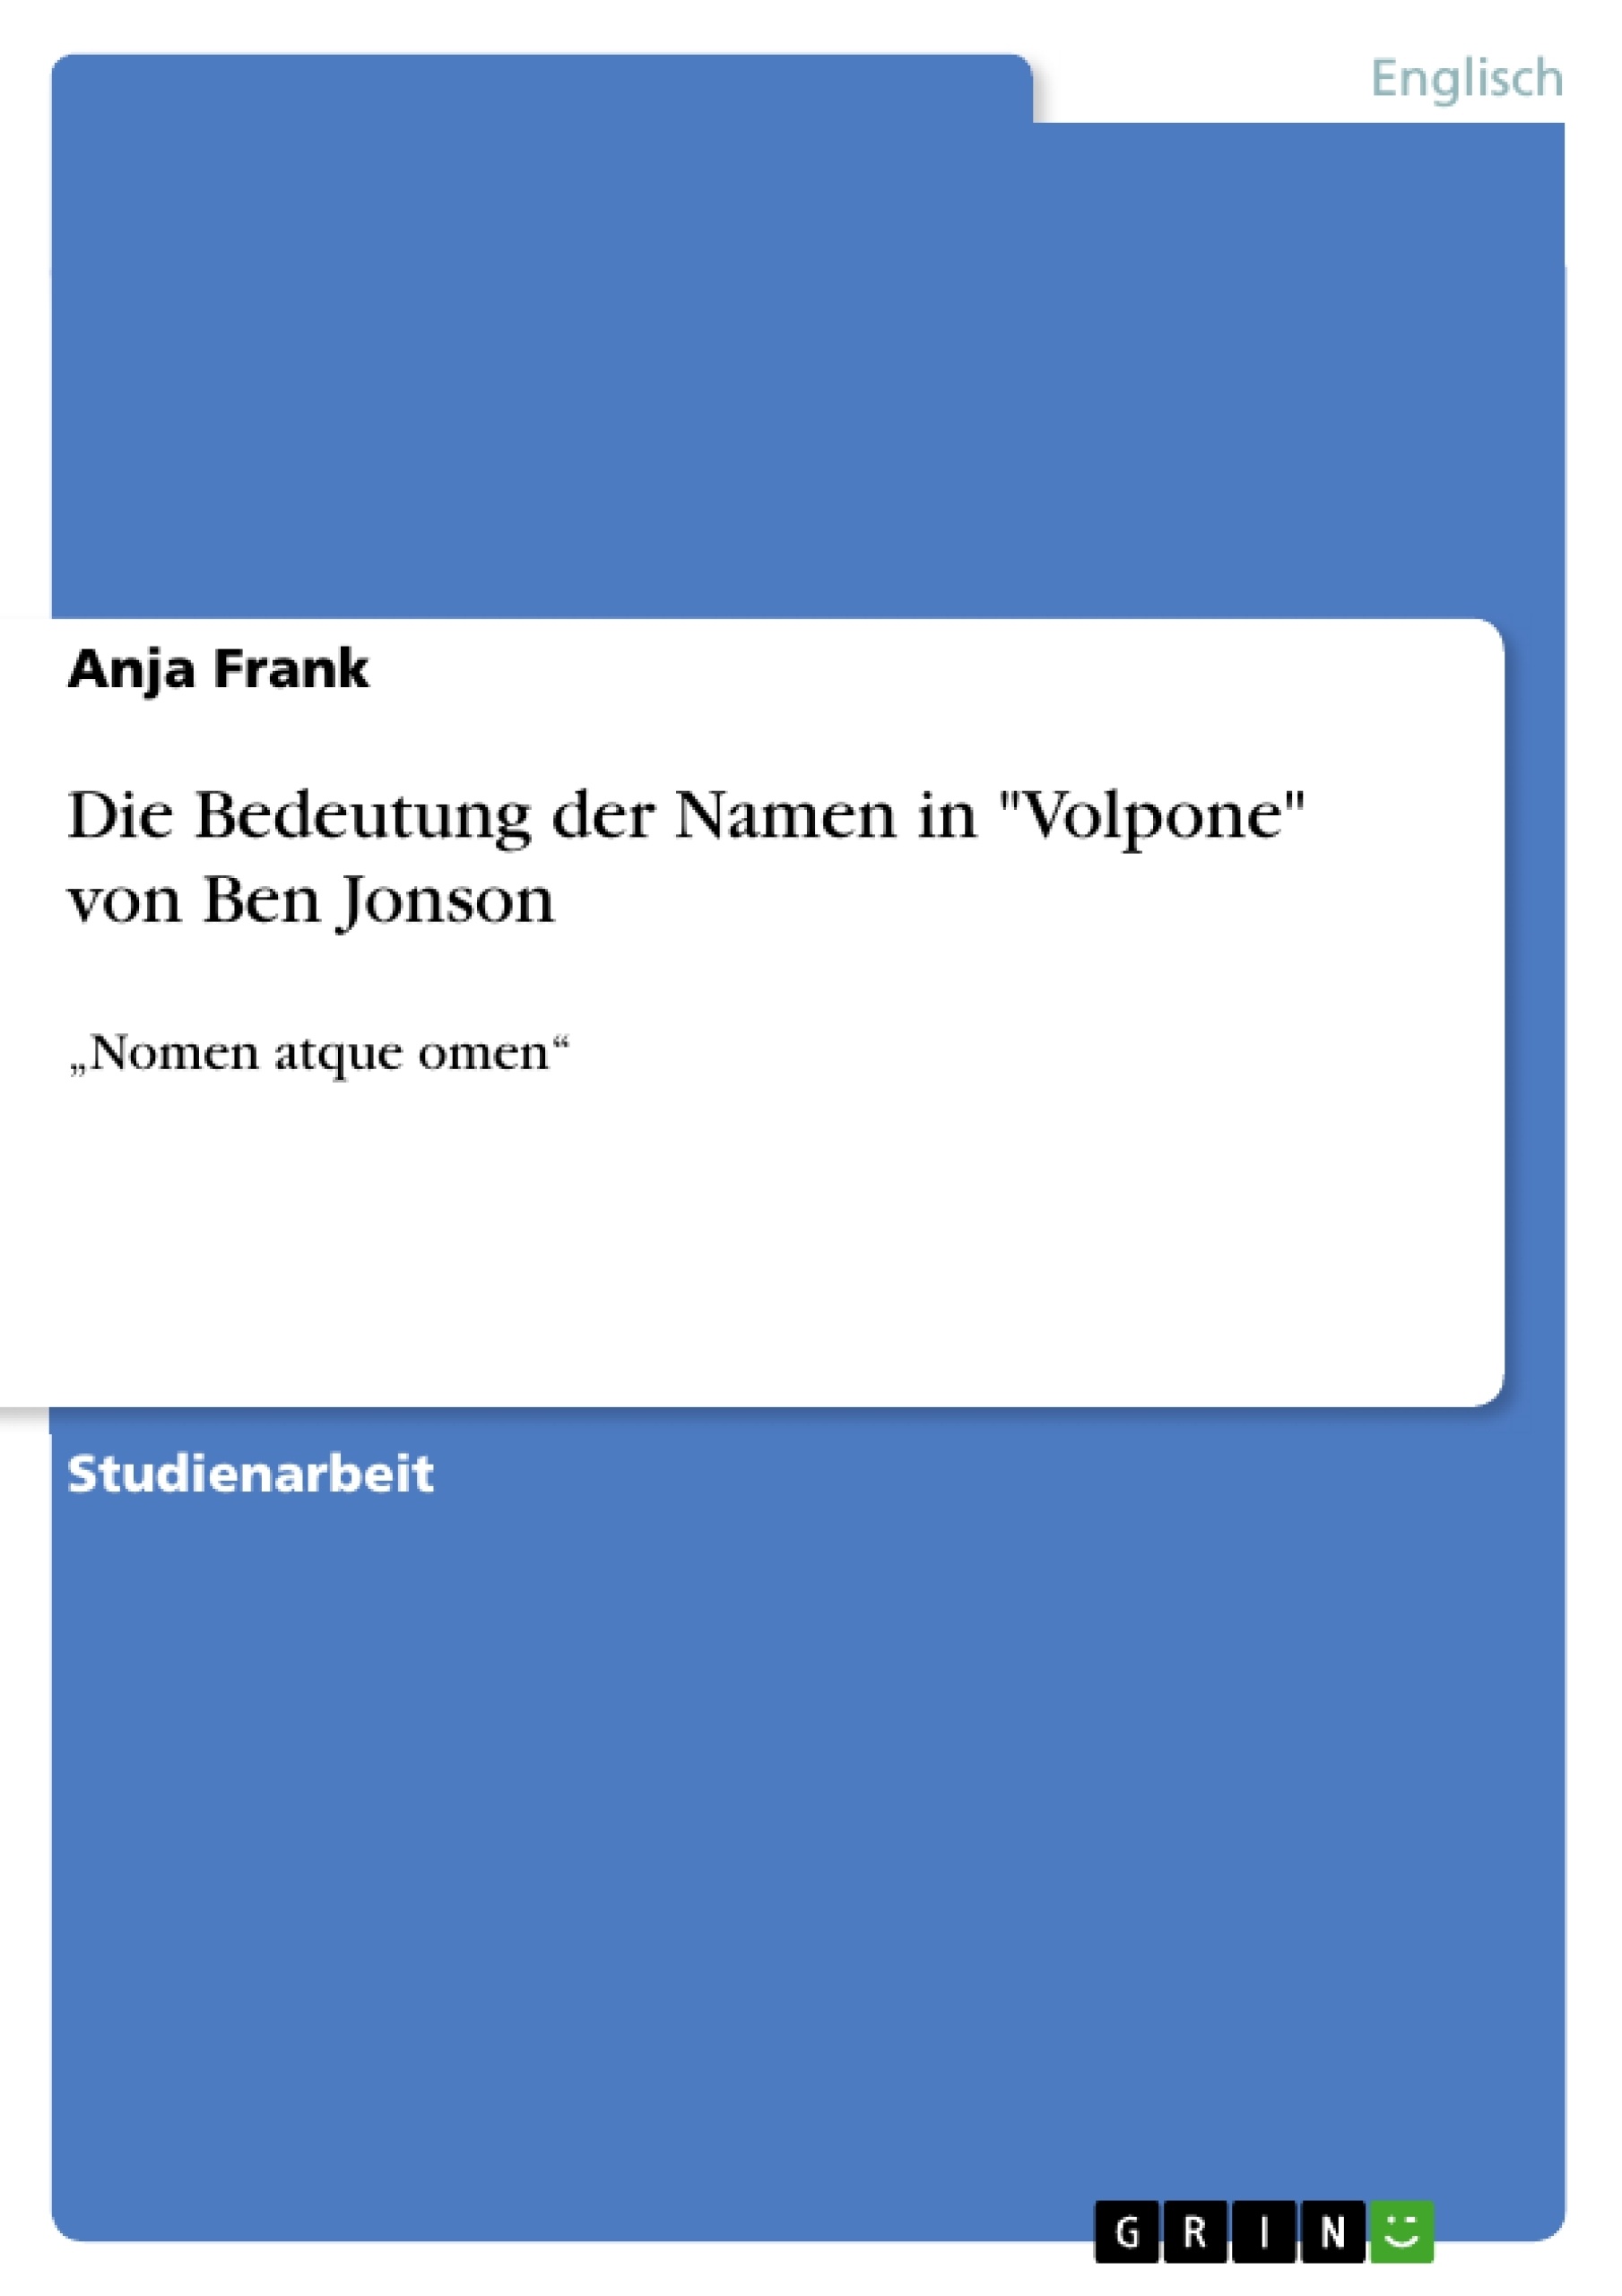 Título: Die Bedeutung der Namen in "Volpone" von Ben Jonson